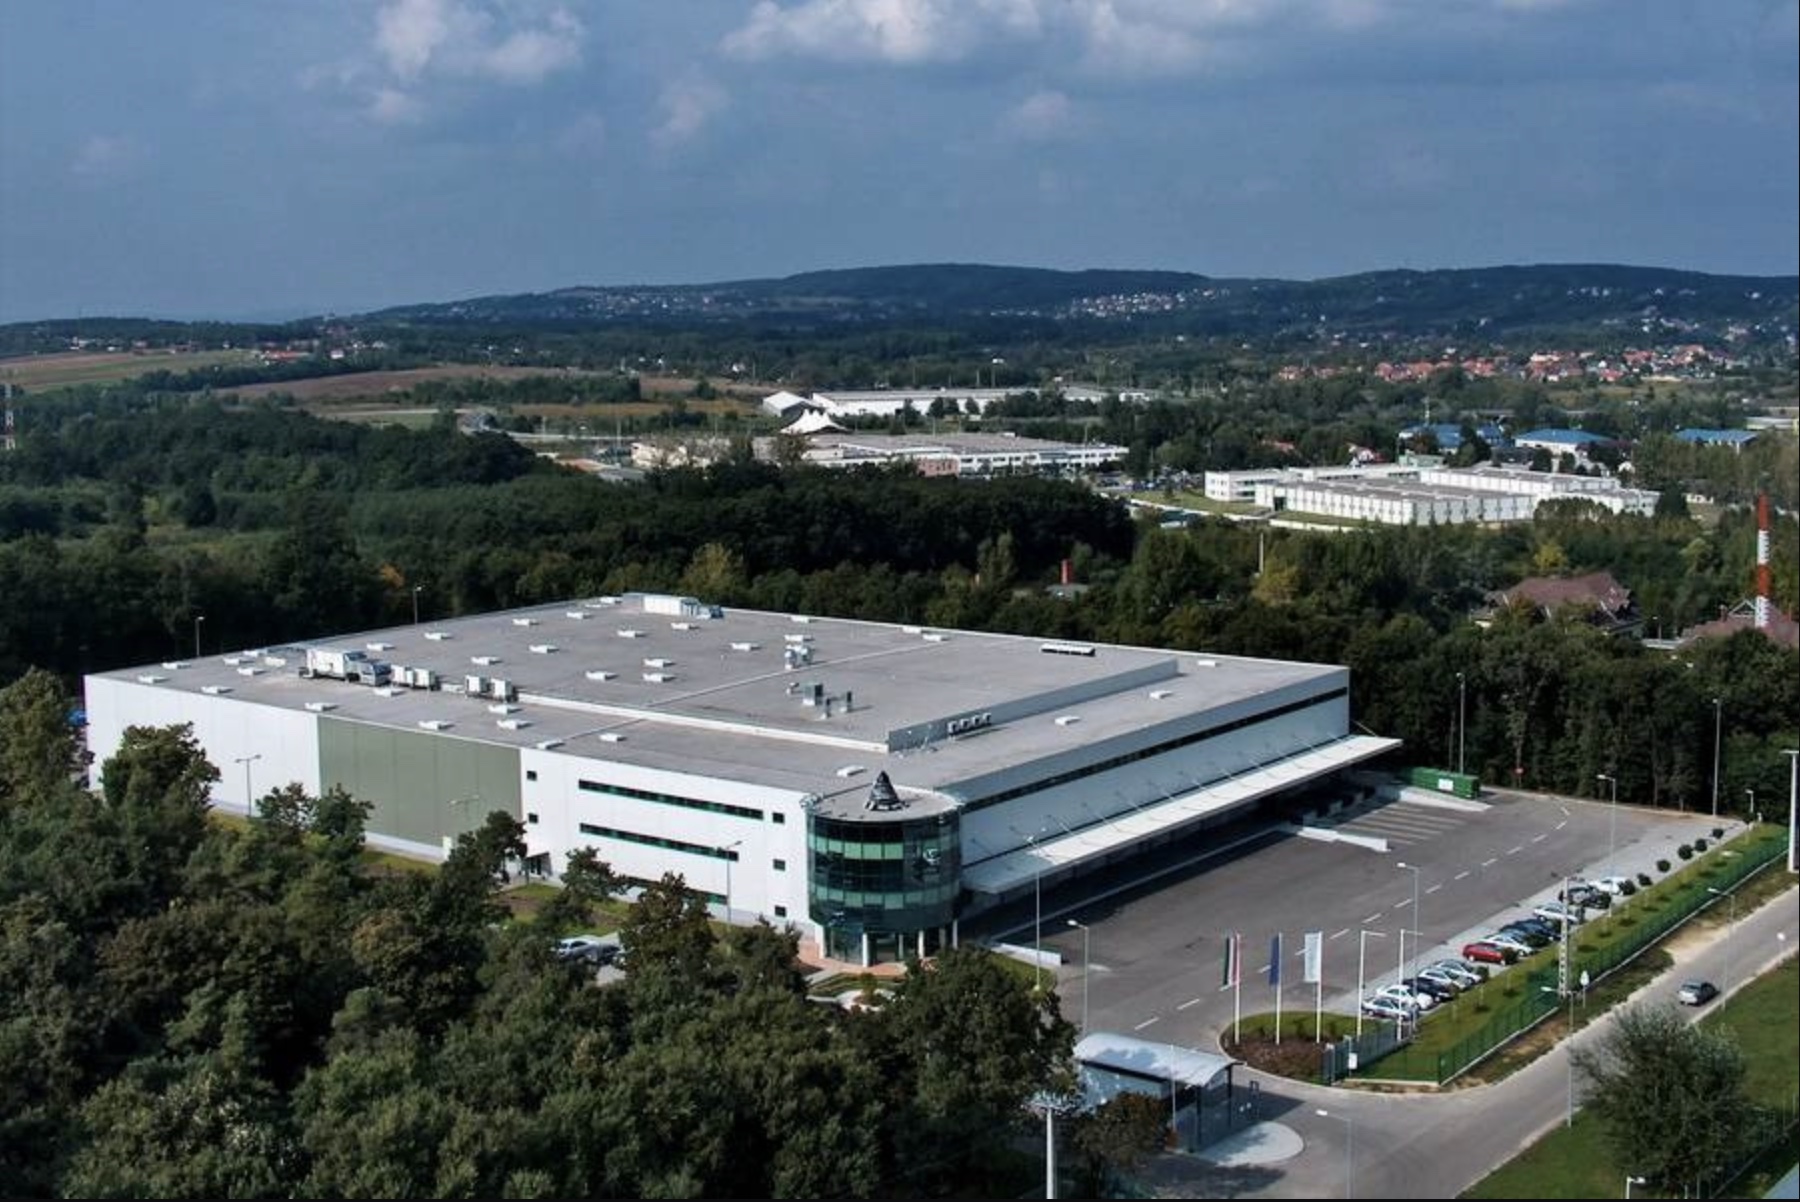 Eladó Budapest keleti részén 15.000 m² logisztikai központ magas műszaki tartalommal